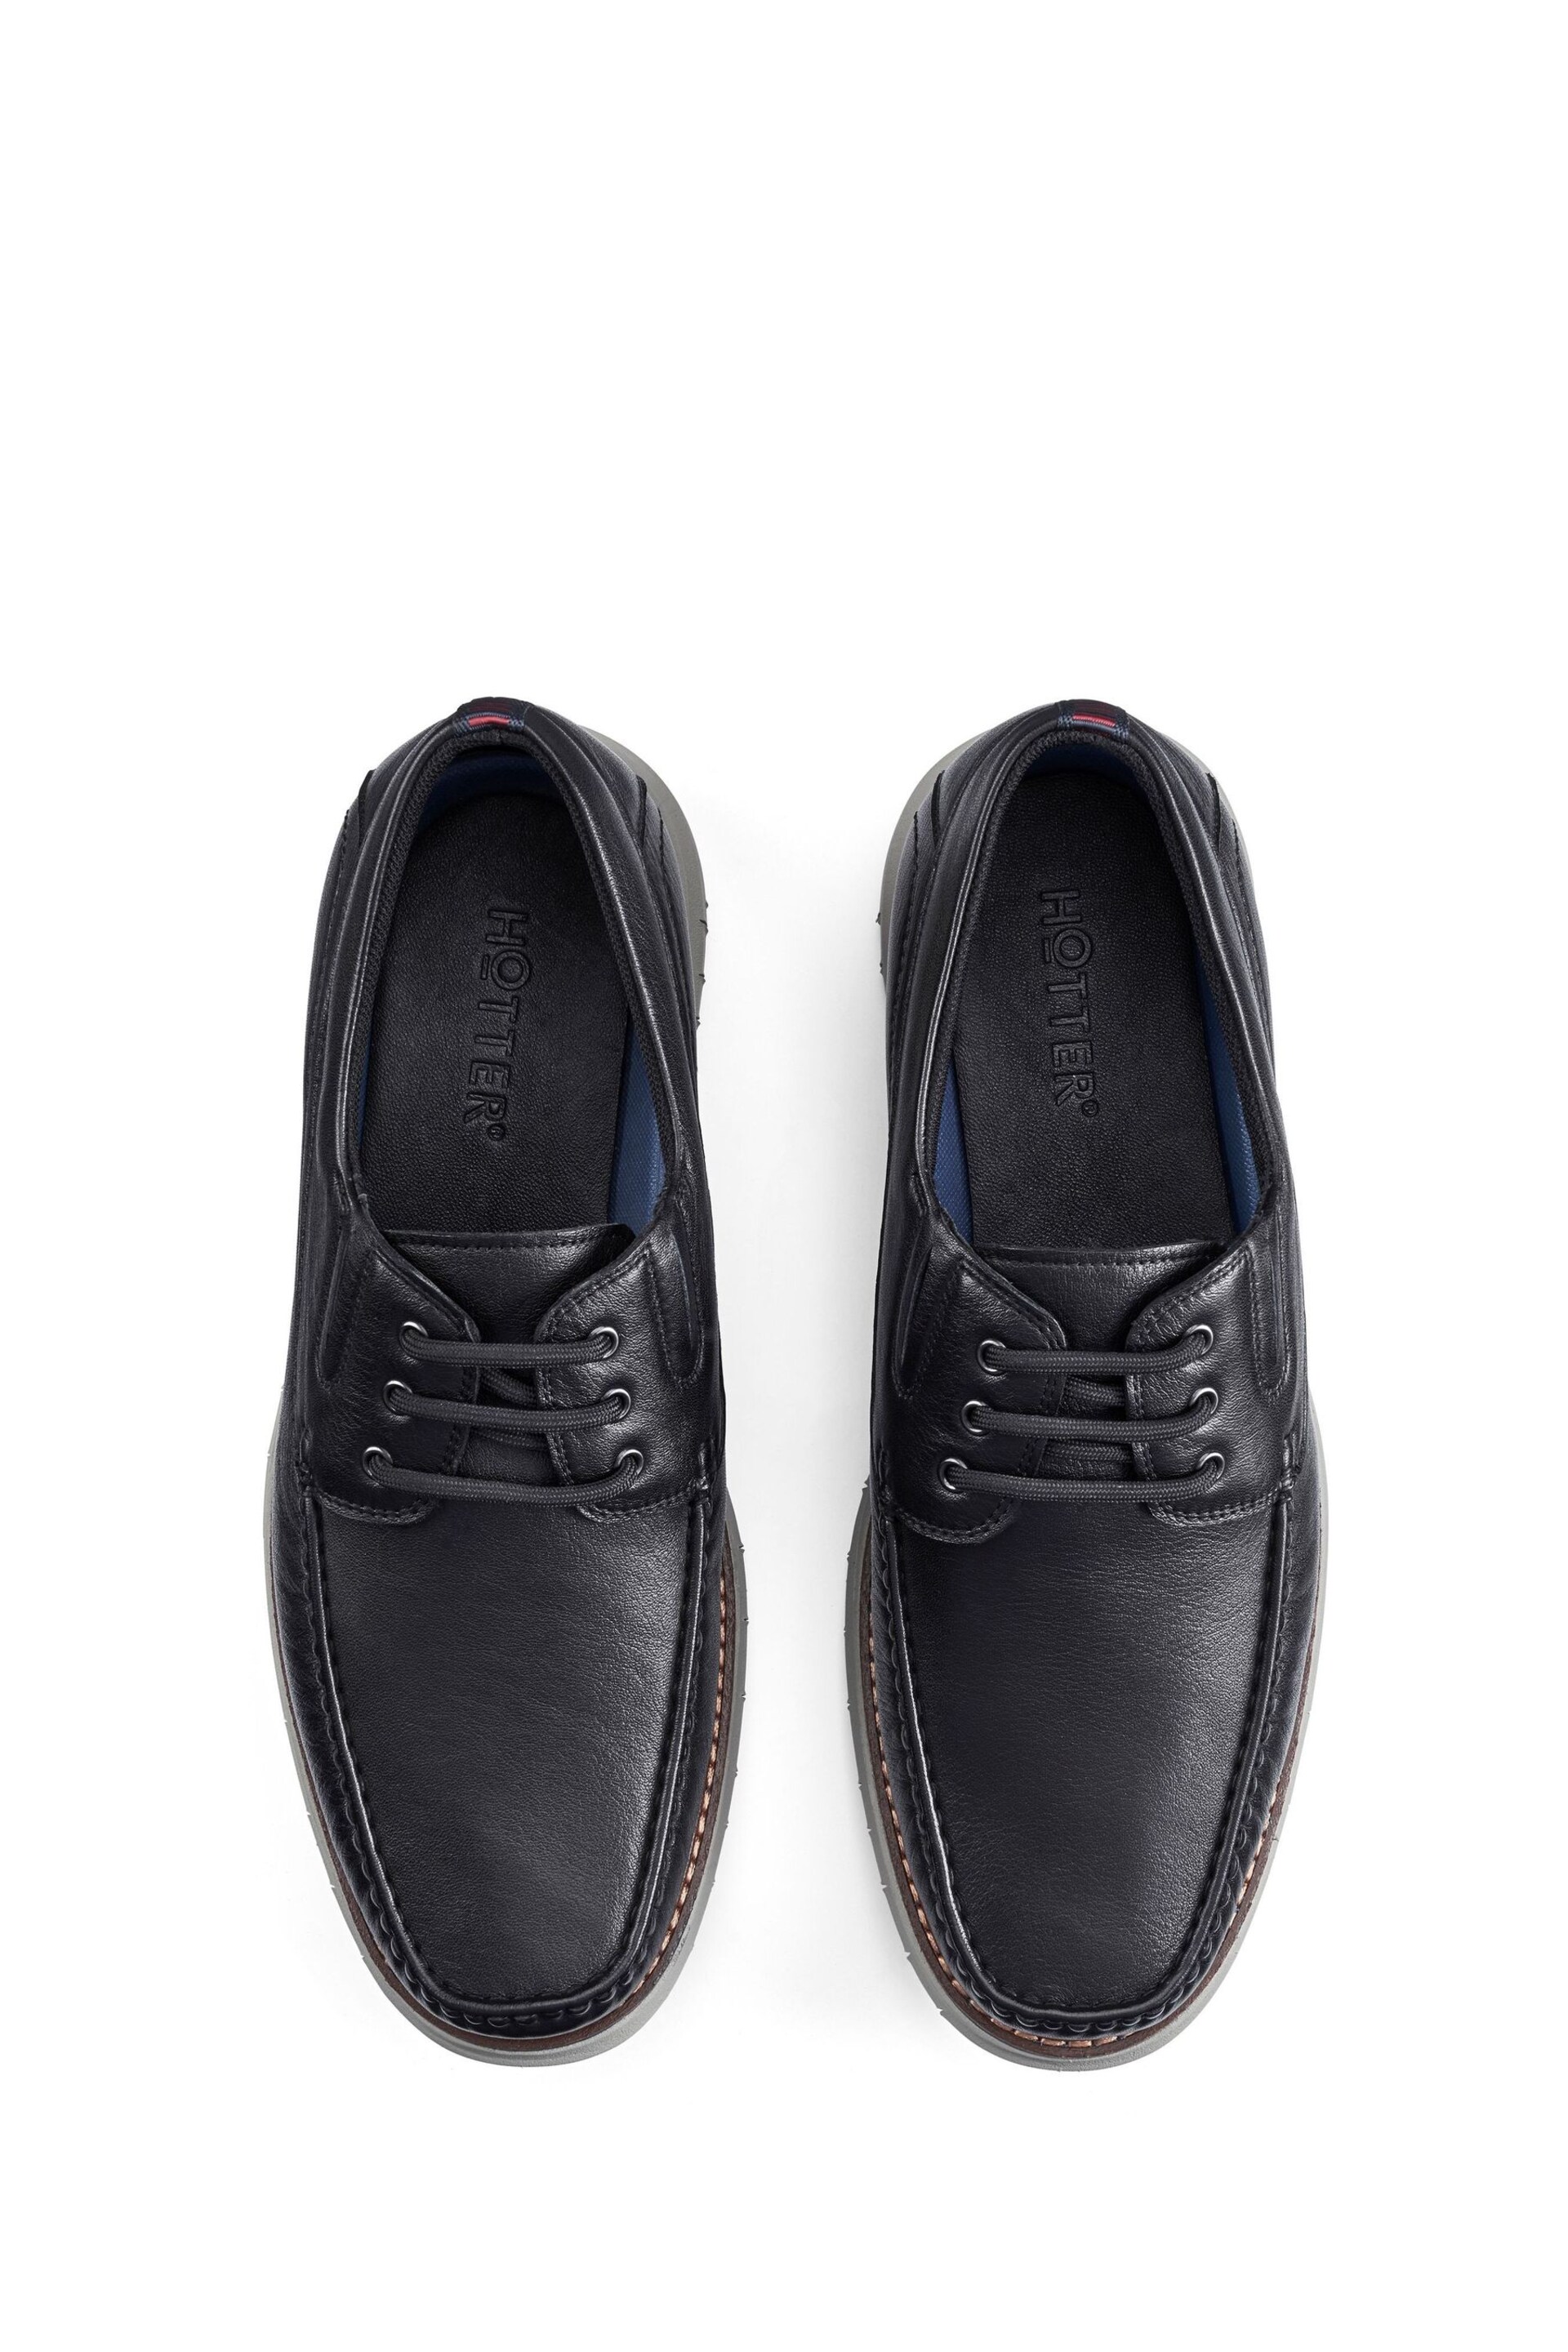 Hotter Black Port Lace-Up Regular Fit Shoes - Image 2 of 3